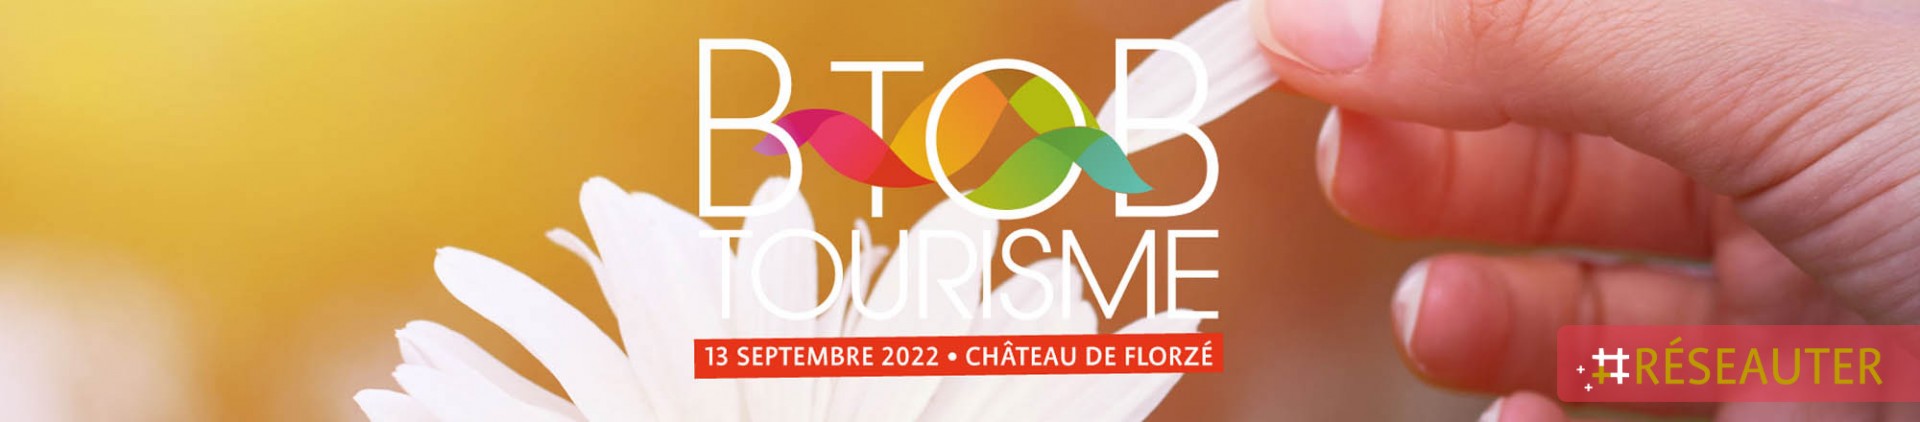 Réseauter - BtoB Tourisme 2022 - Château de Florzé